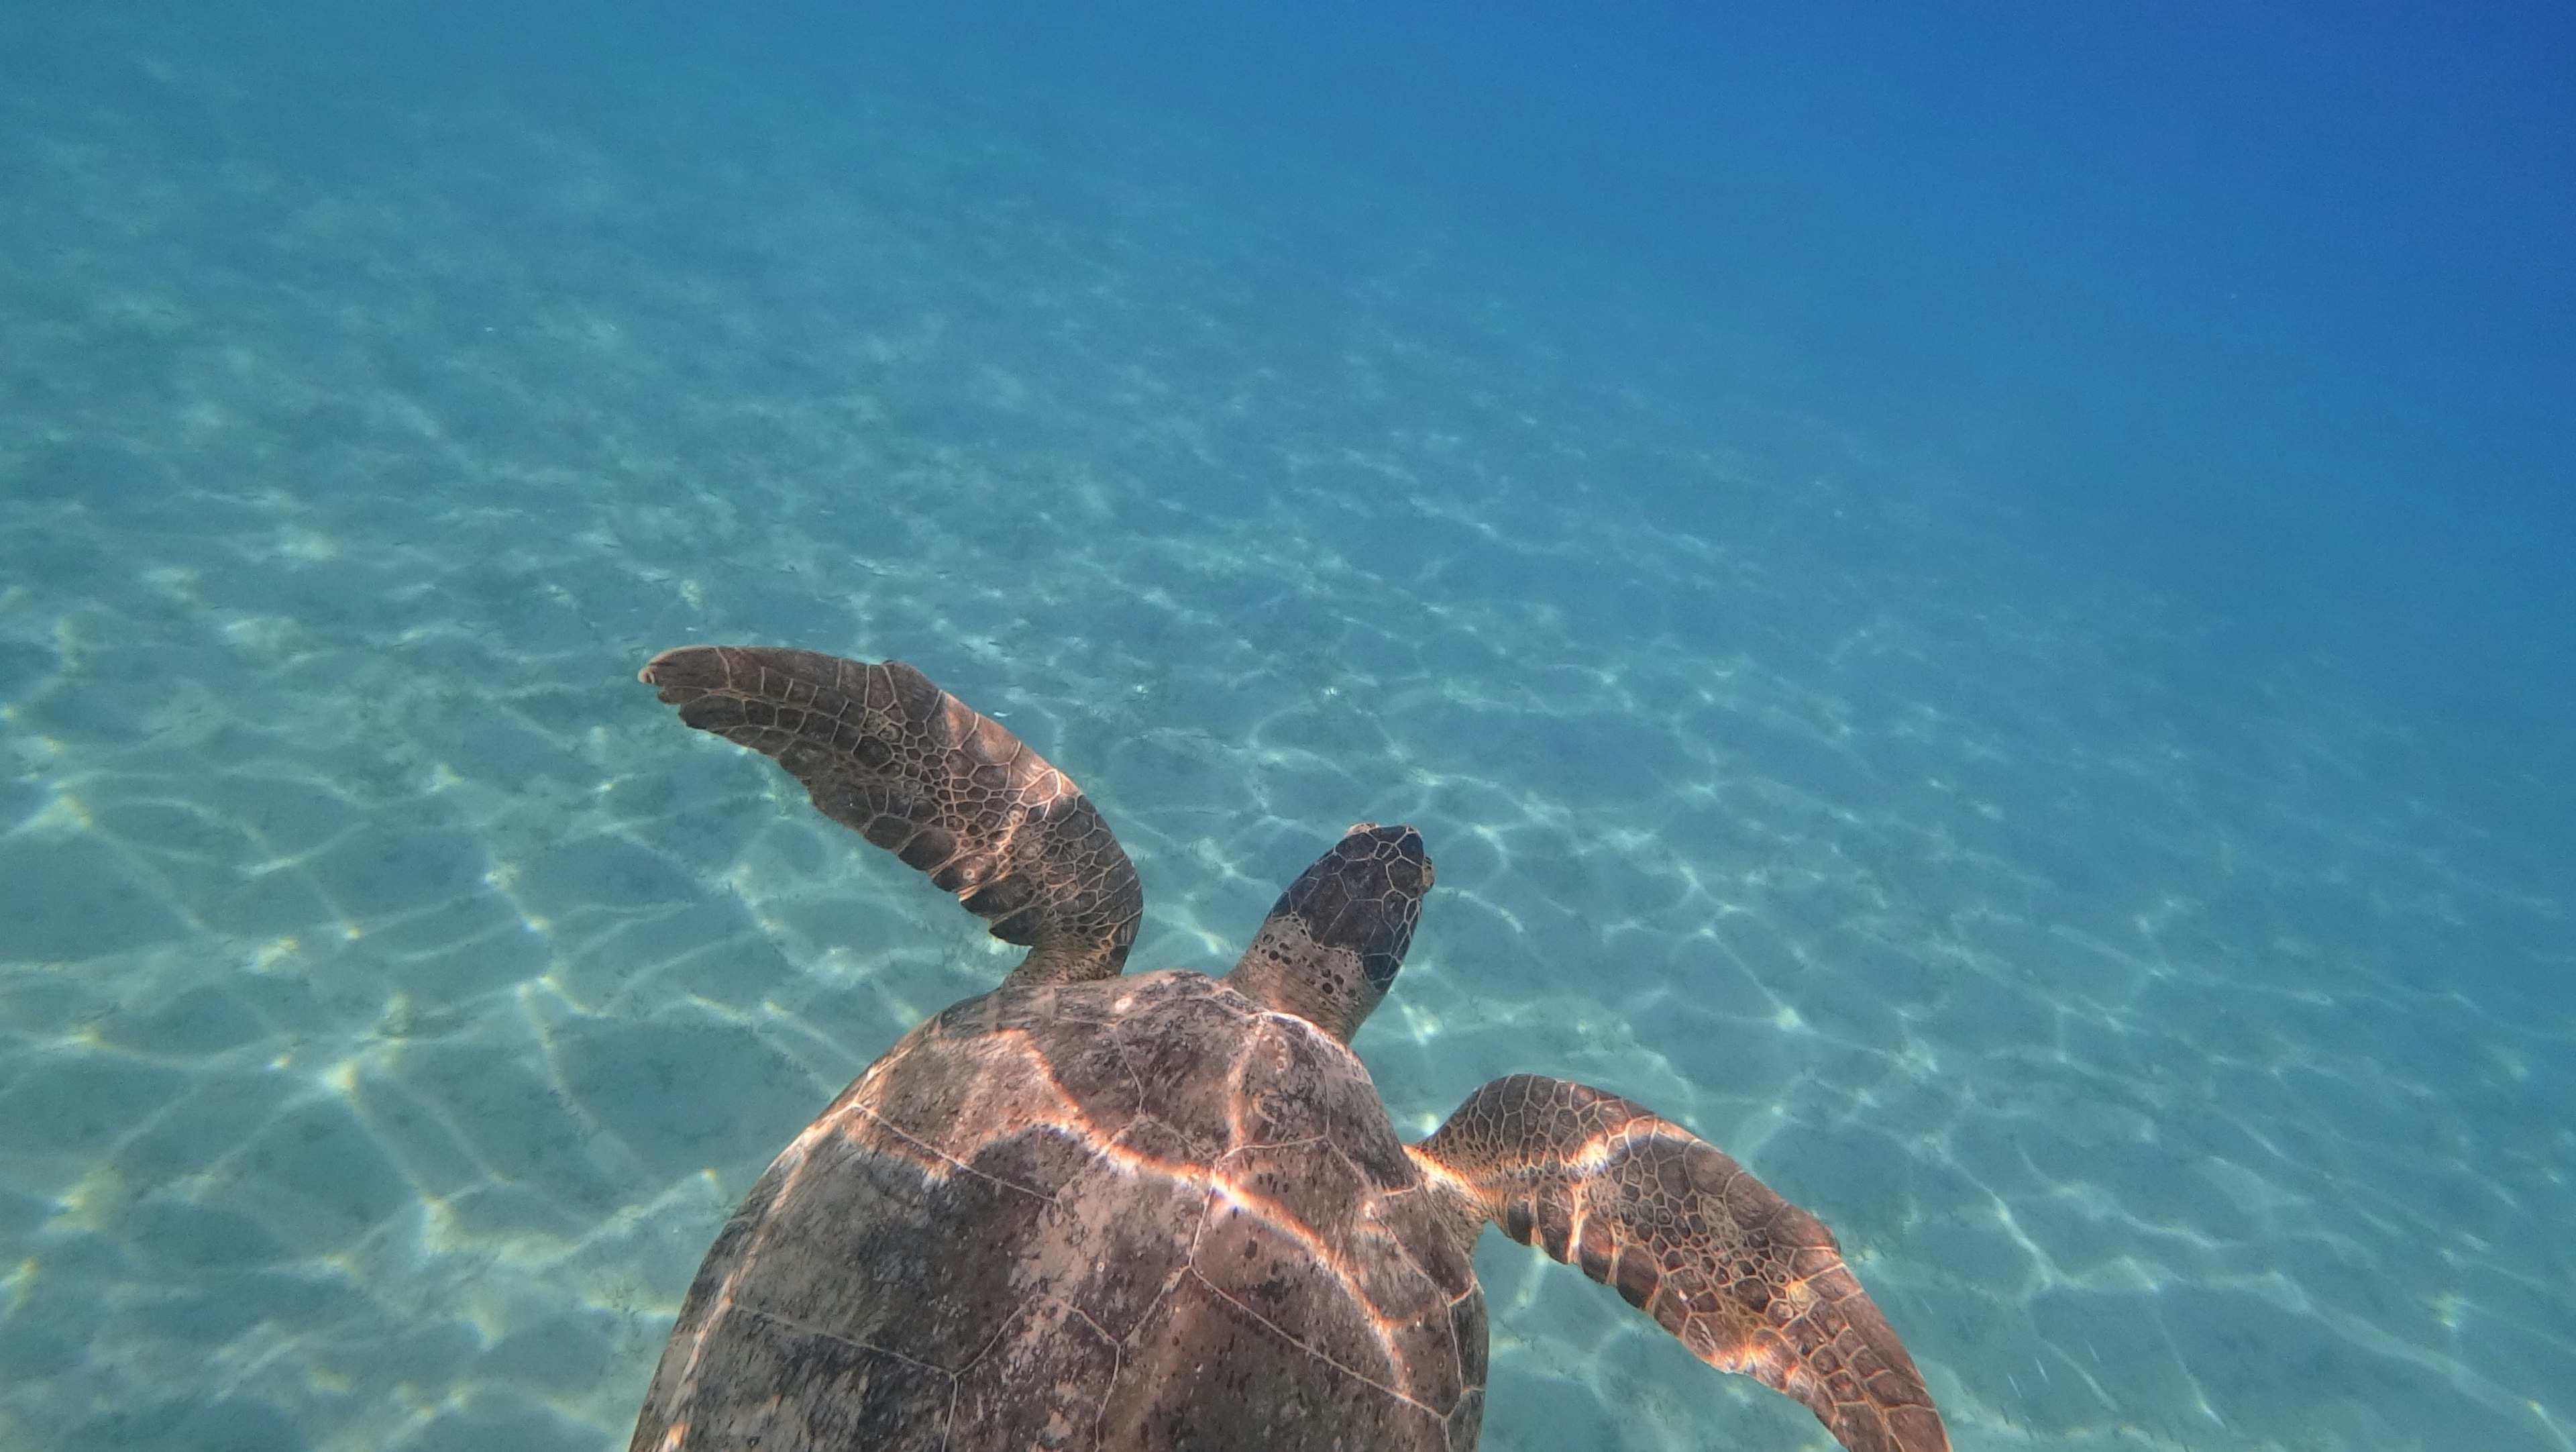 Ad Akumal in Messico di potrebbero vedere le tartarughe marine, come nella foto